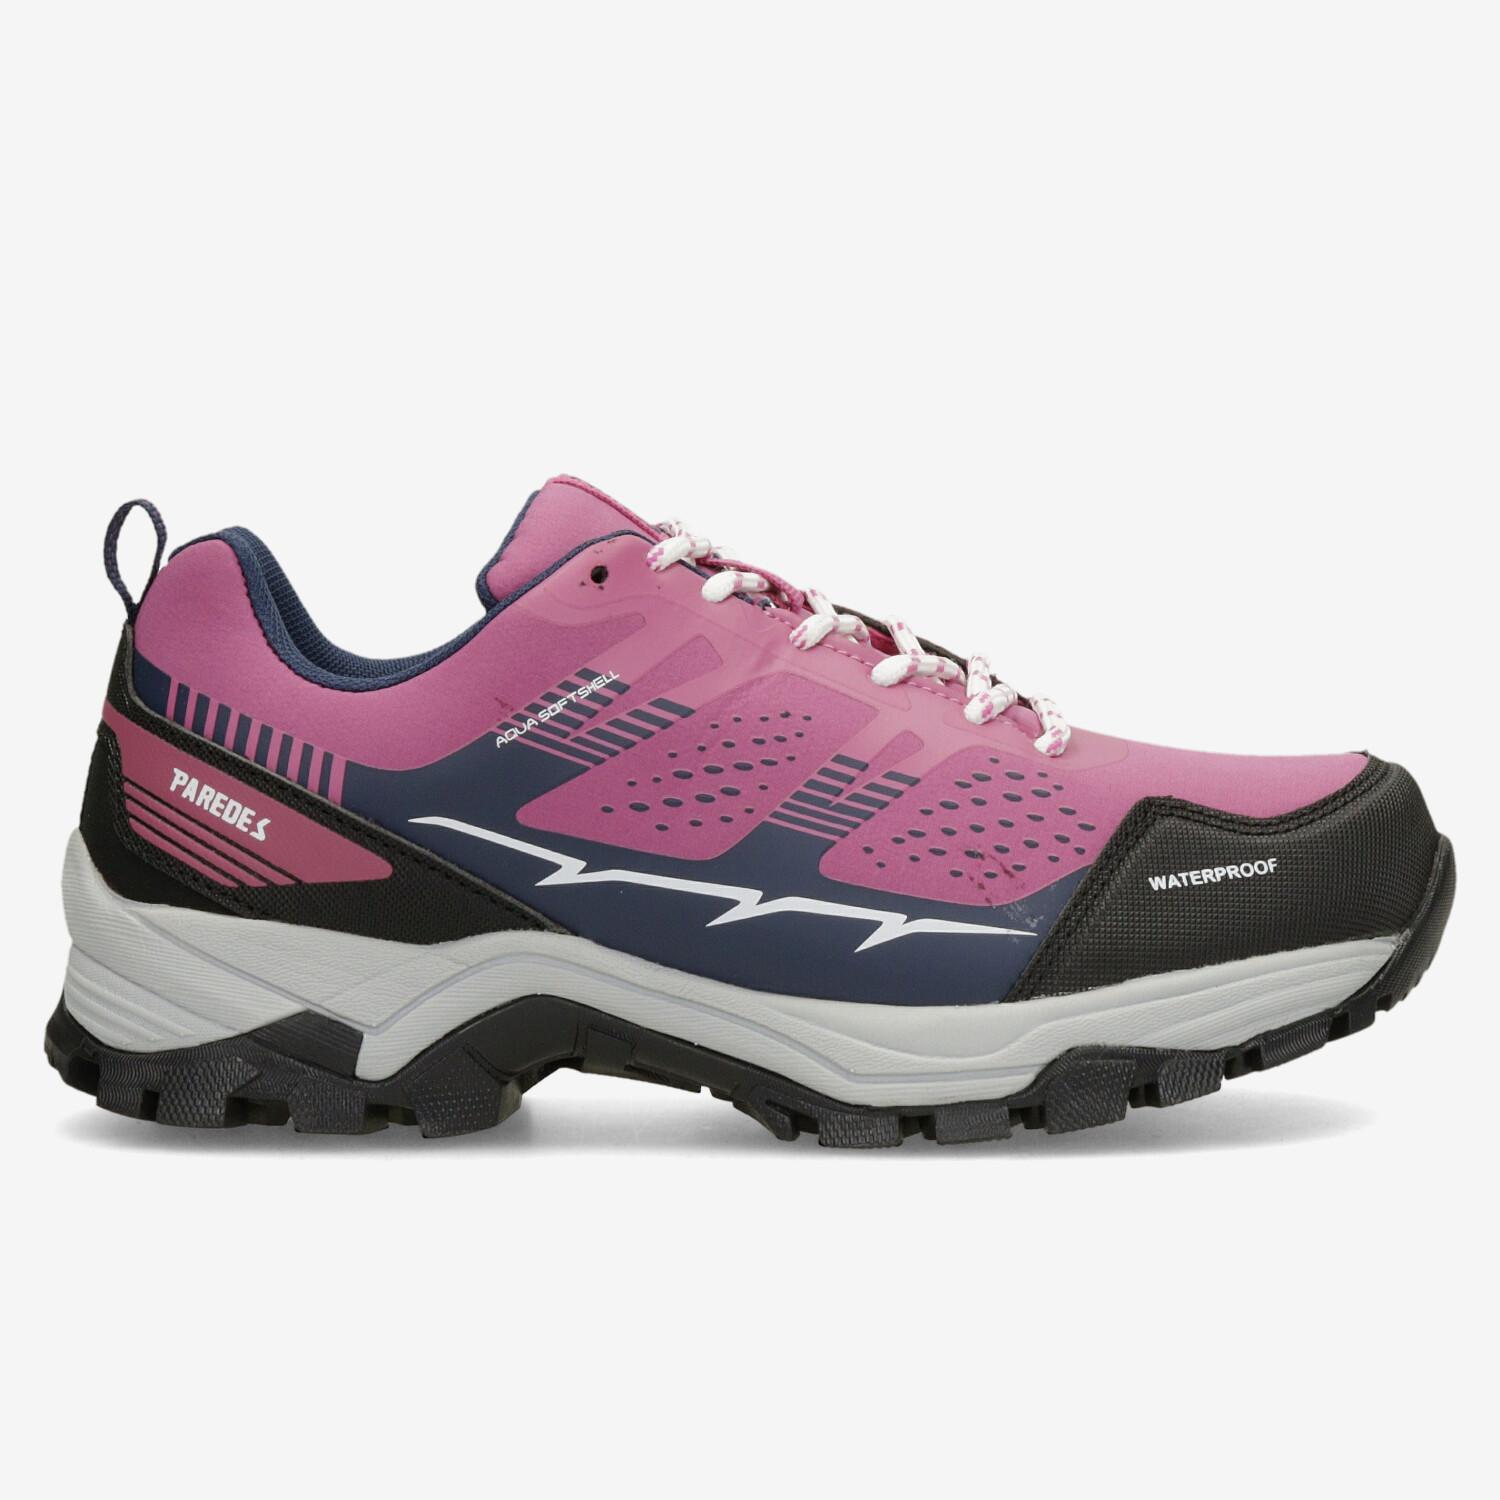 Paredes Bielsa - Fuchsia - Chaussures de randonnée femme sports taille 37